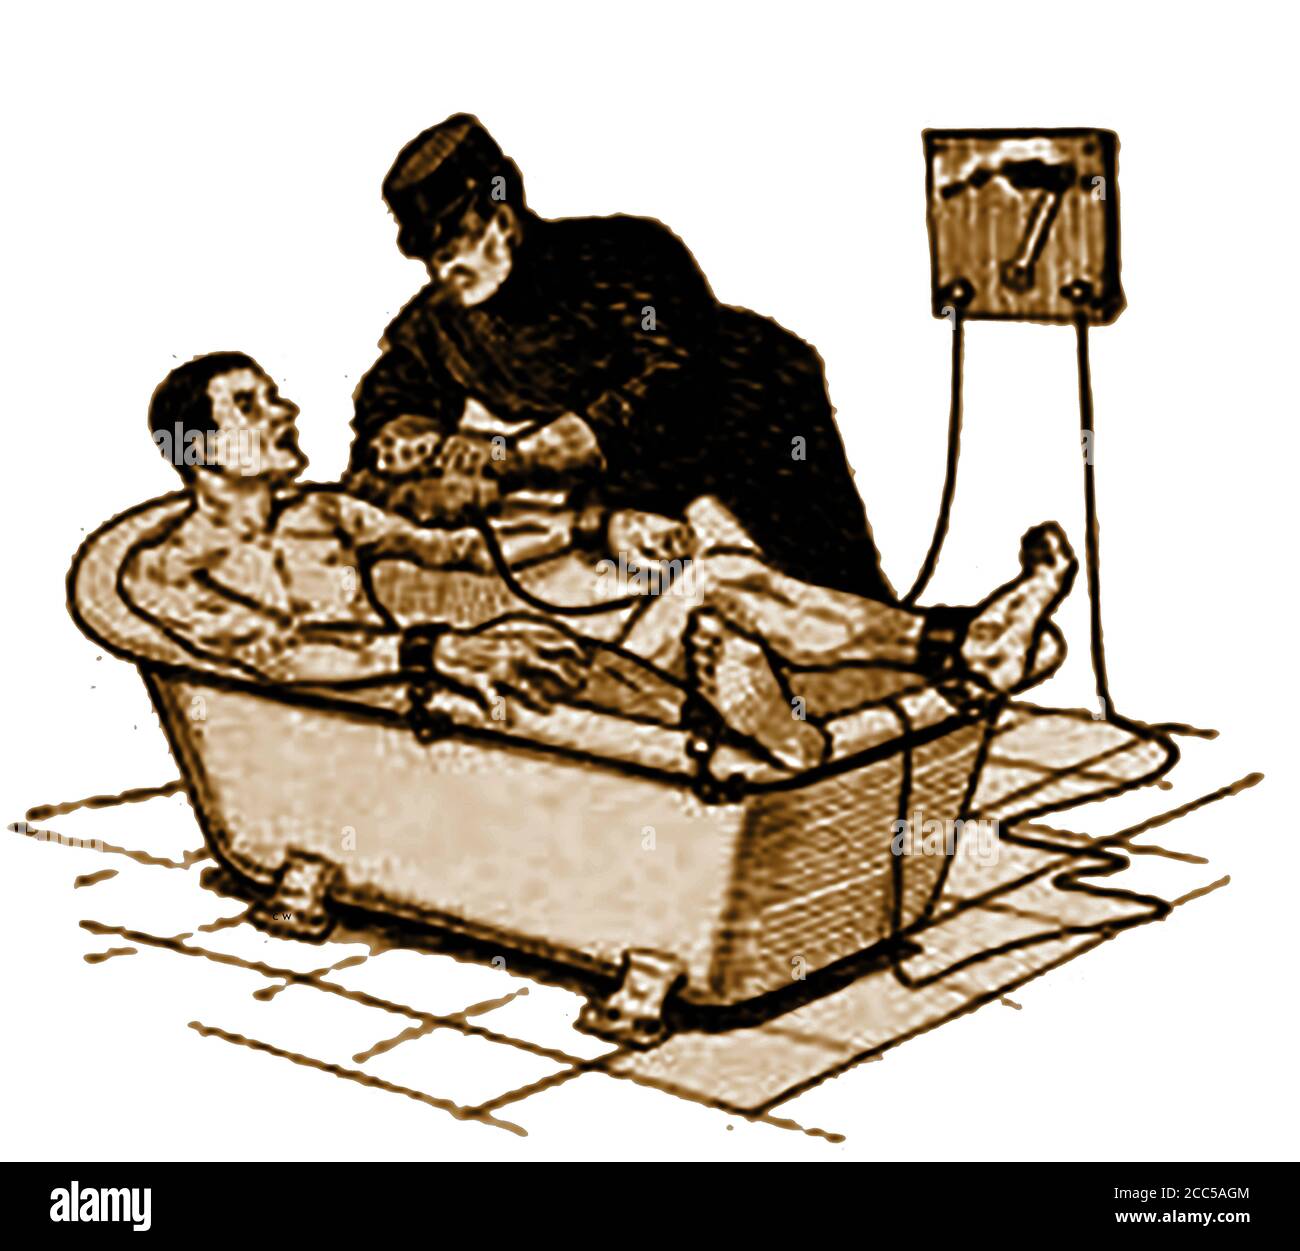 Vereinigte Staaten von Amerika - Crime & Punishment 1910 - der "Summing Bird" - einmal in der Ohio Penitentiary (und vielleicht anderswo) verwendet, um Kriminelle zu bestrafen oder zu extrahieren Geständnisse mit einem Bad aus Wasser und Strom. (Abbildung 1910) Stockfoto